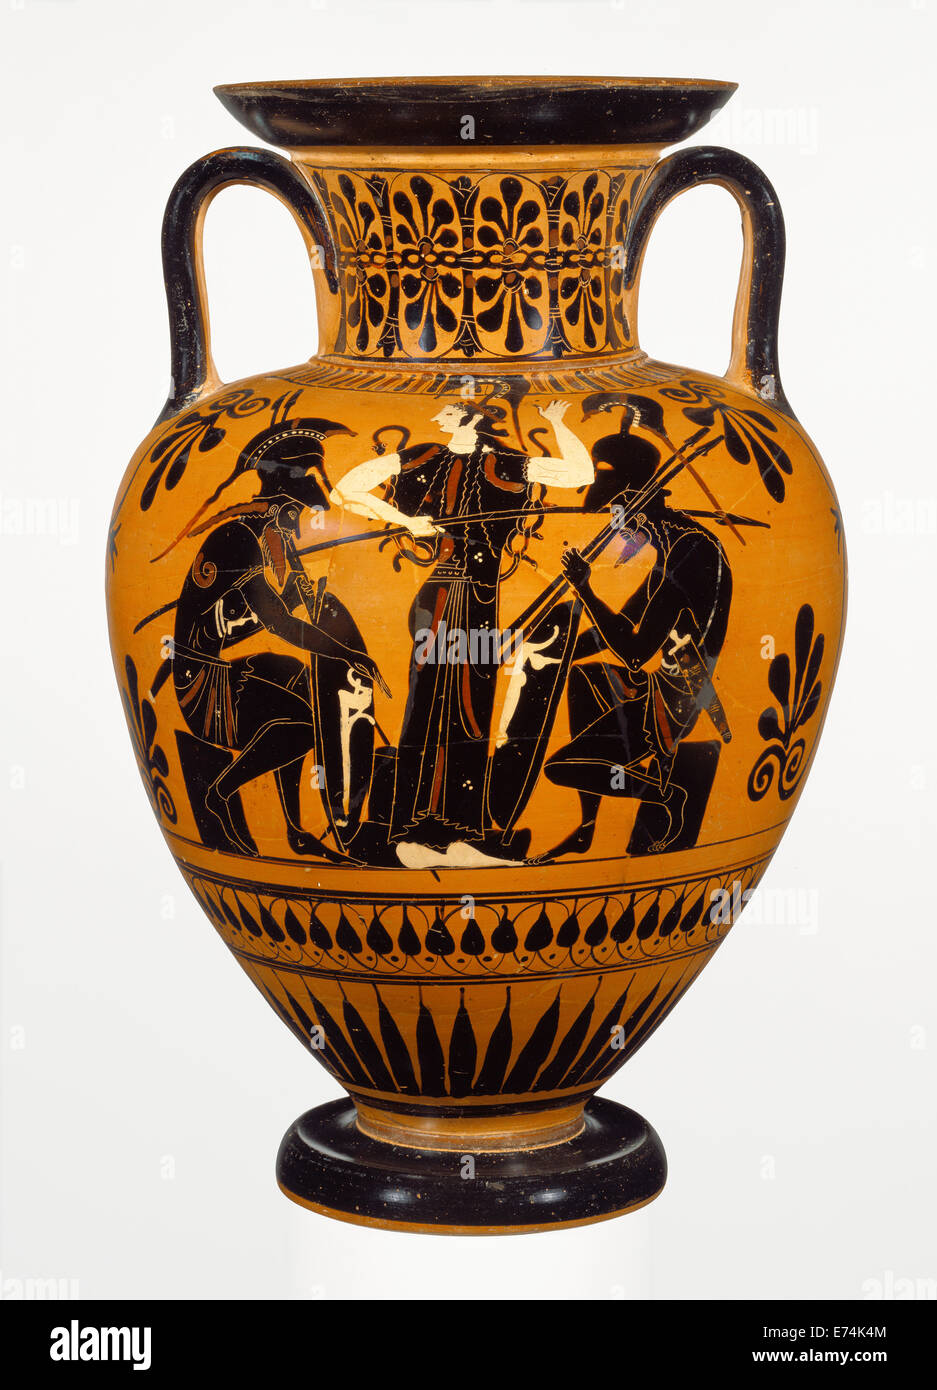 Attic Black-Figure Amphora cou ; attribuée au groupe Leagros, Grec (Grenier), actif 525 - 500 avant J.-C., Athènes, Grèce, Europe Banque D'Images